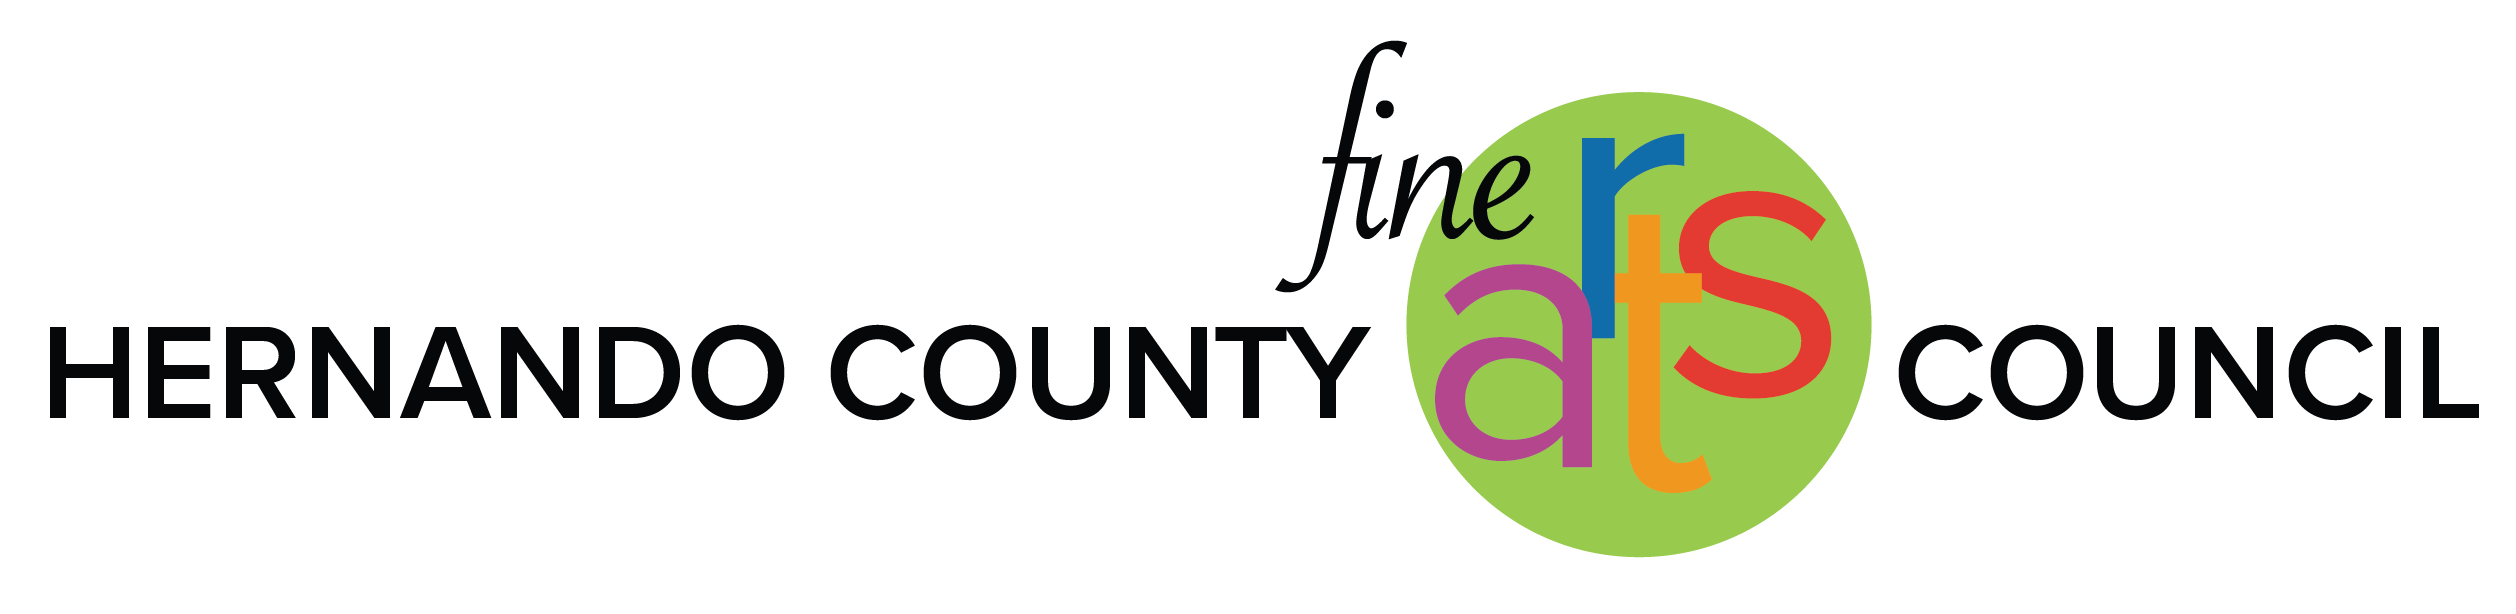 Hernando County Fine Arts Council logo